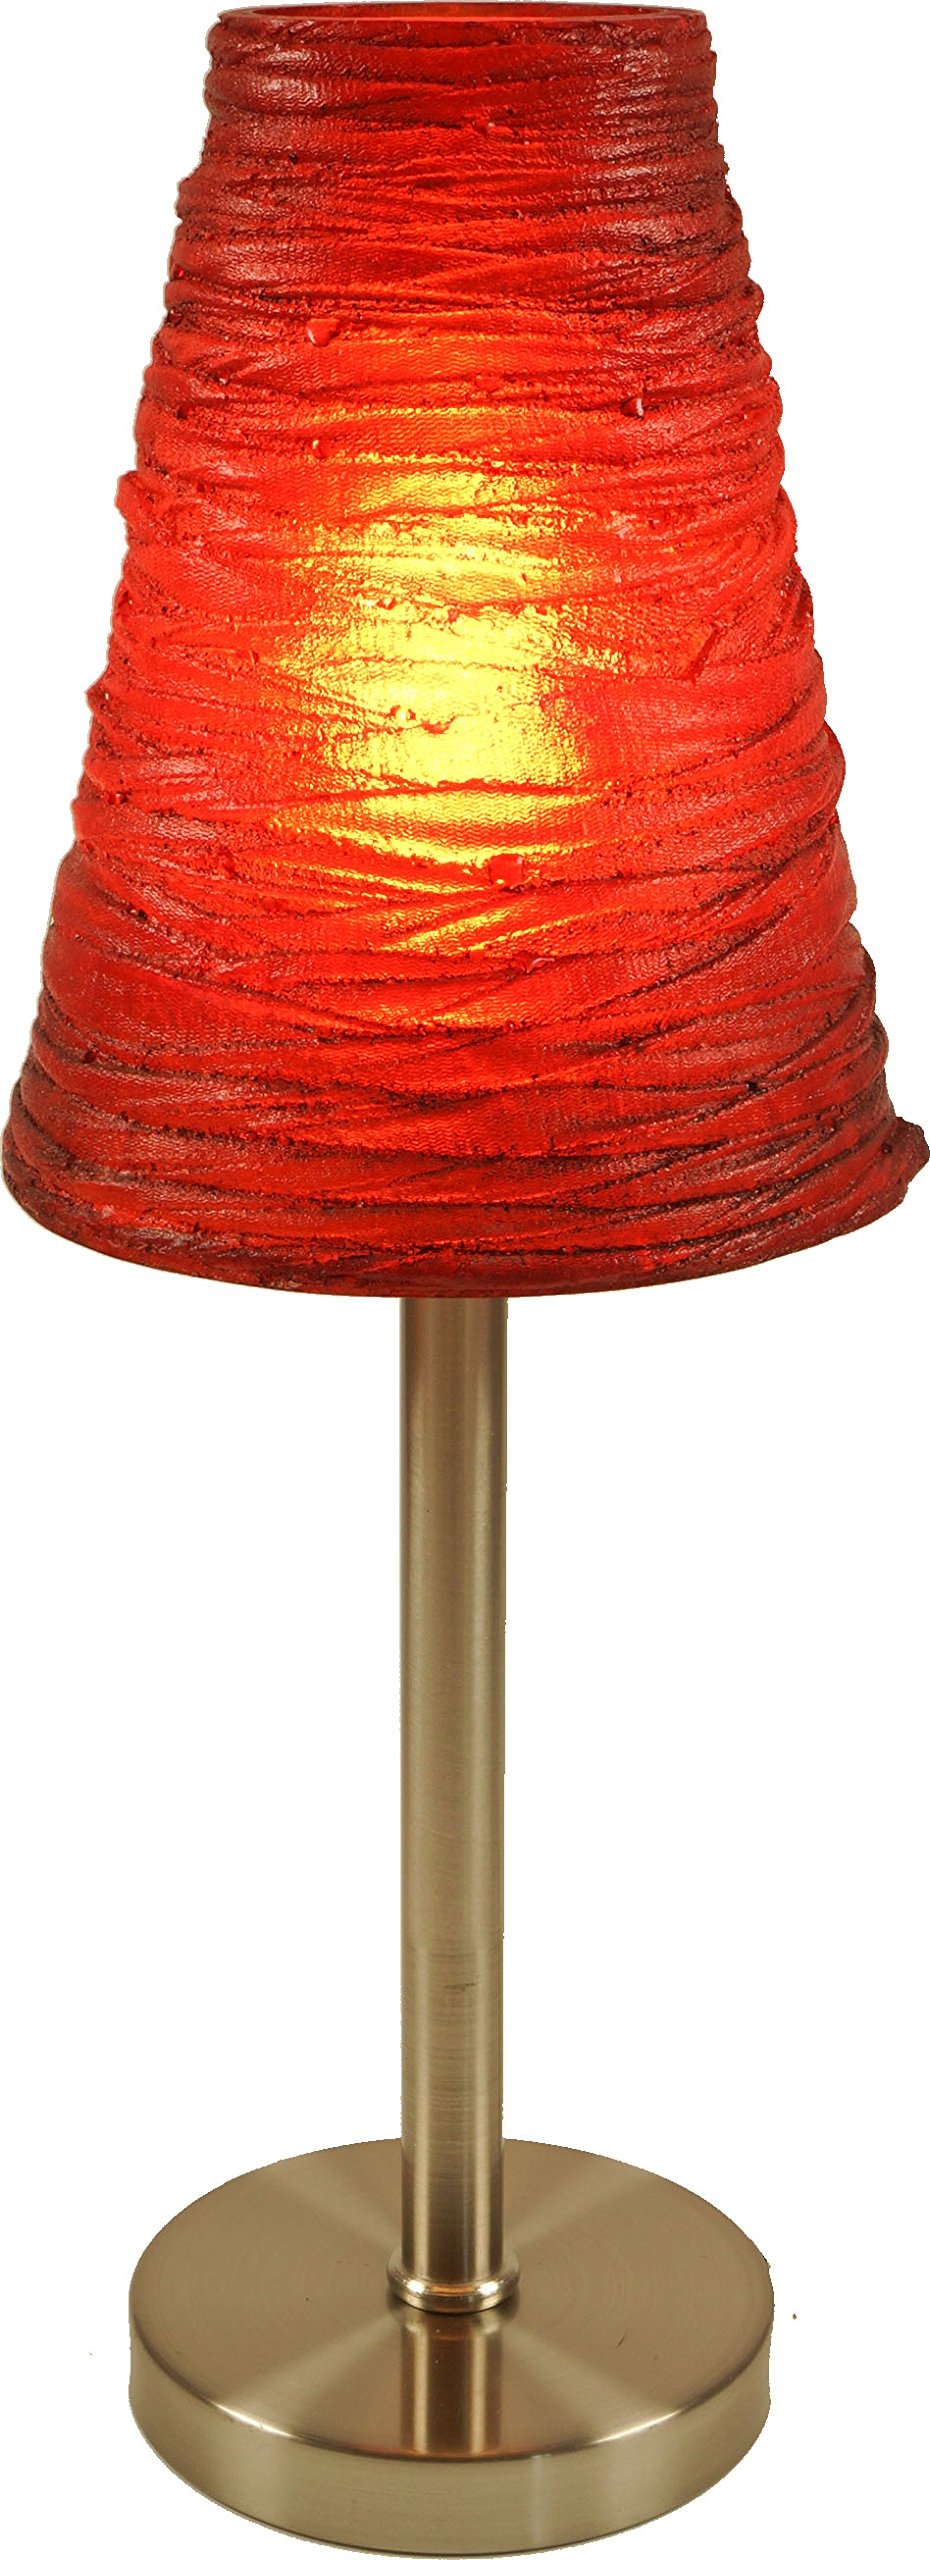 GURU SHOP Tischleuchte Kokopelli - Lola 1377, Rot, Metall, Farbe: Rot, 42x16x16 cm, Klassische, Moderne Tischlampen